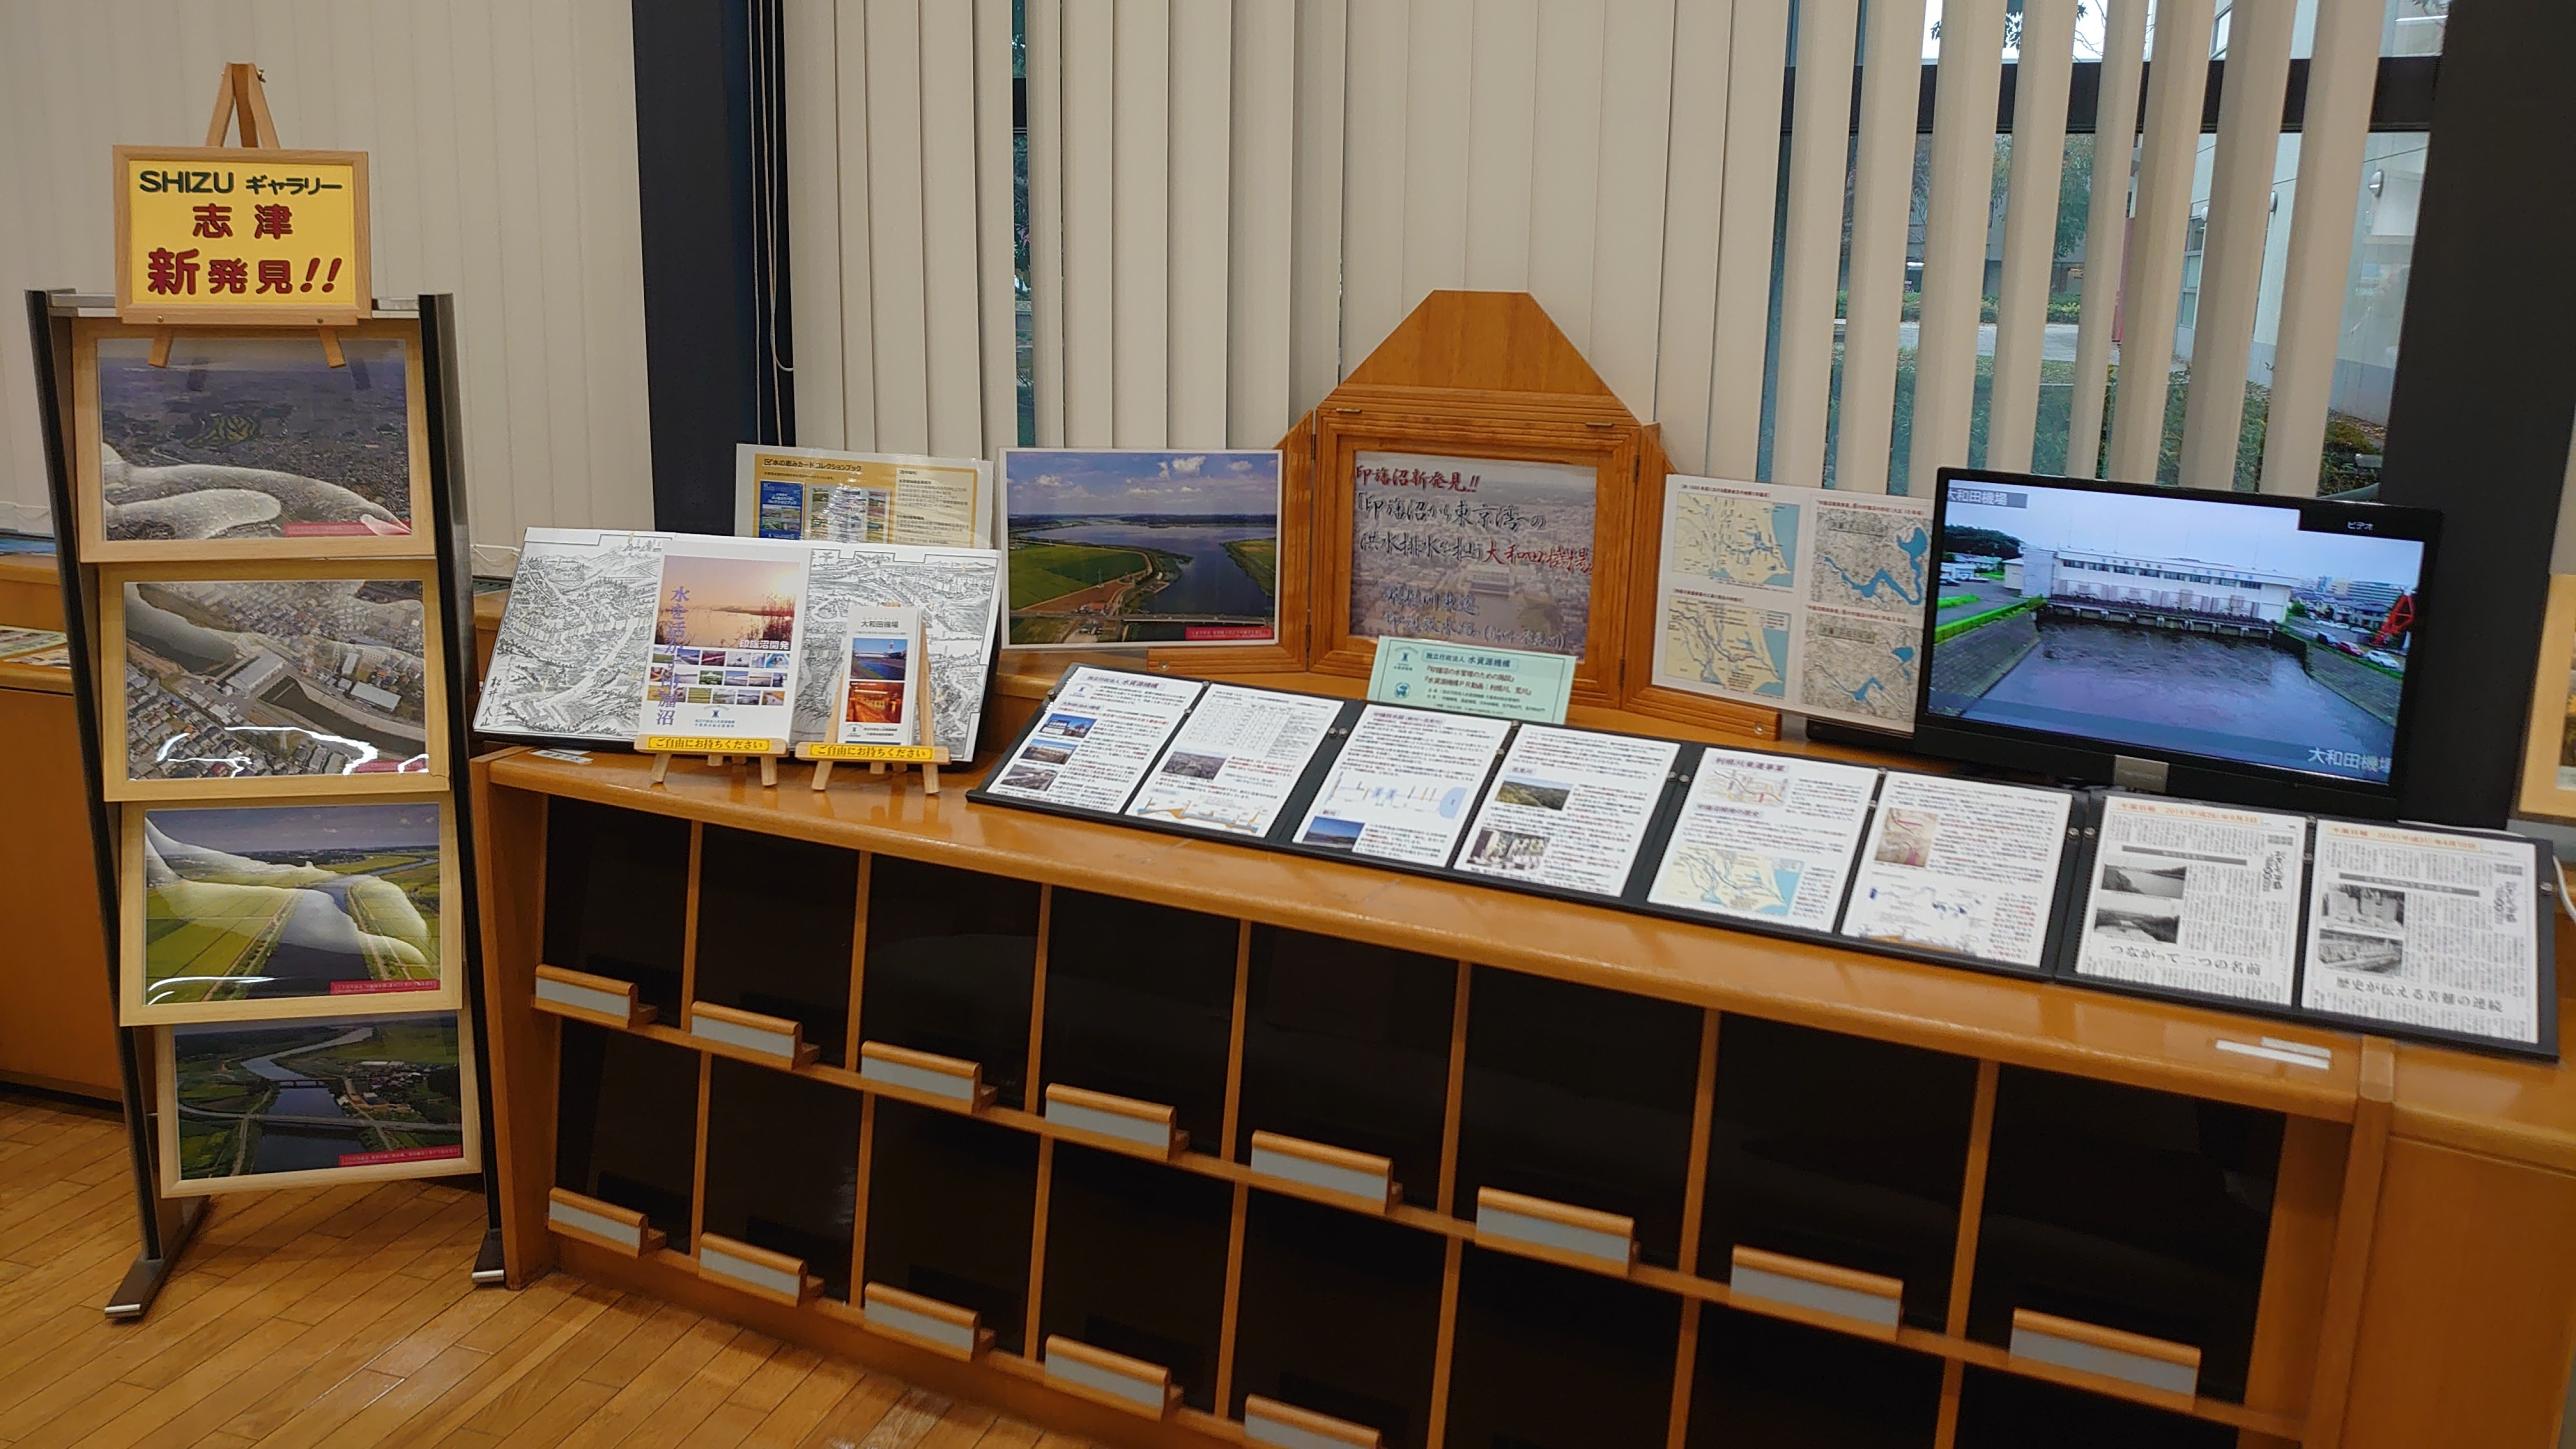 志津図書館12月企画展示(洪水排水を担う大和田機場)